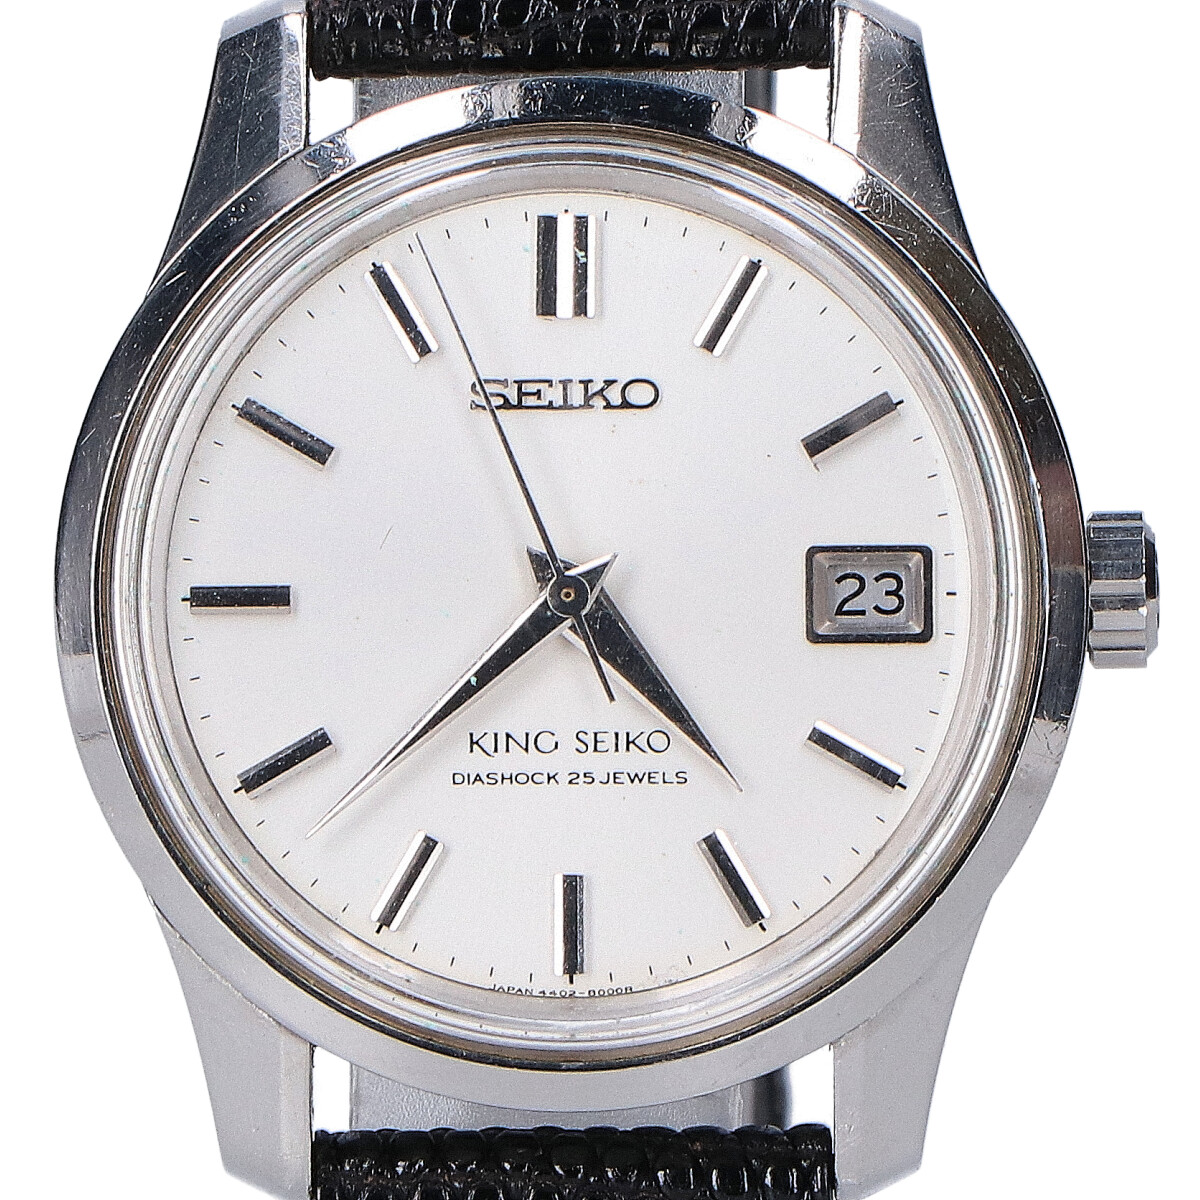 セイコーのSS キングセイコー 4402-8000 デイト 手巻き 腕時計の買取実績です。